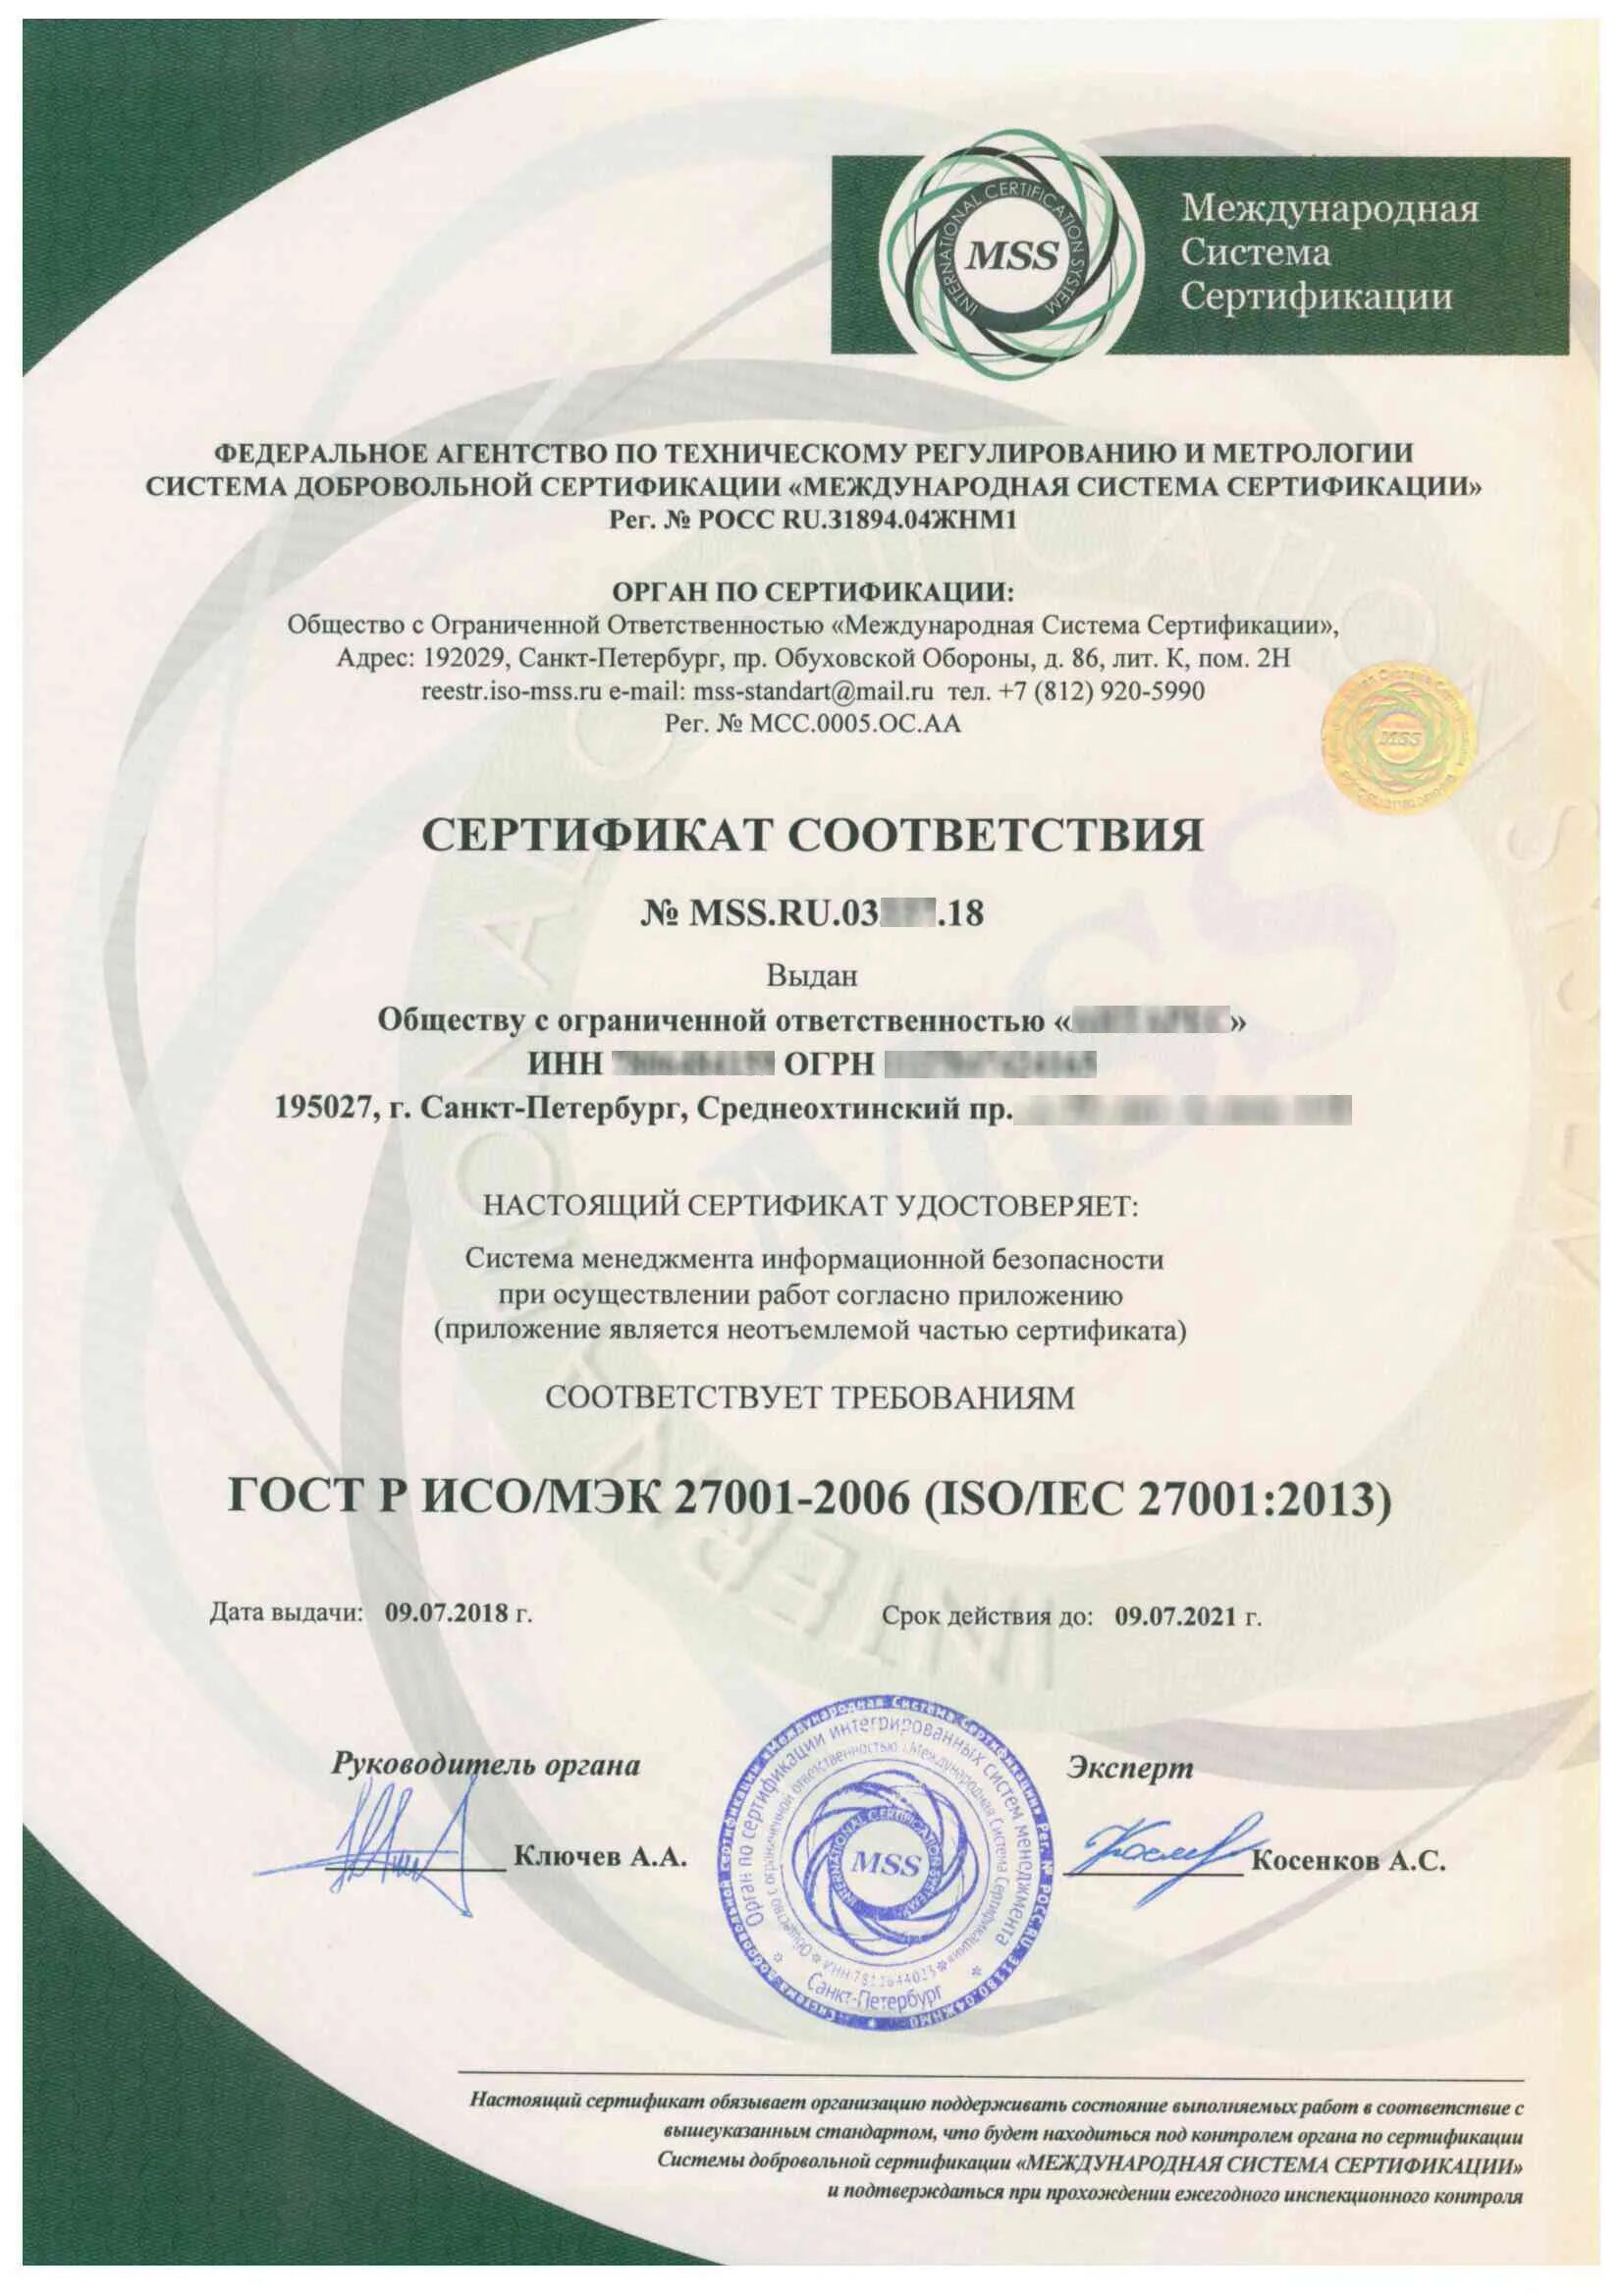 Документы международных соответствий. ГОСТ Р ИСО/МЭК 27001-2006. Международная система сертификации. Сертификаты безопасности информационной системы. Системы сертификации в России.